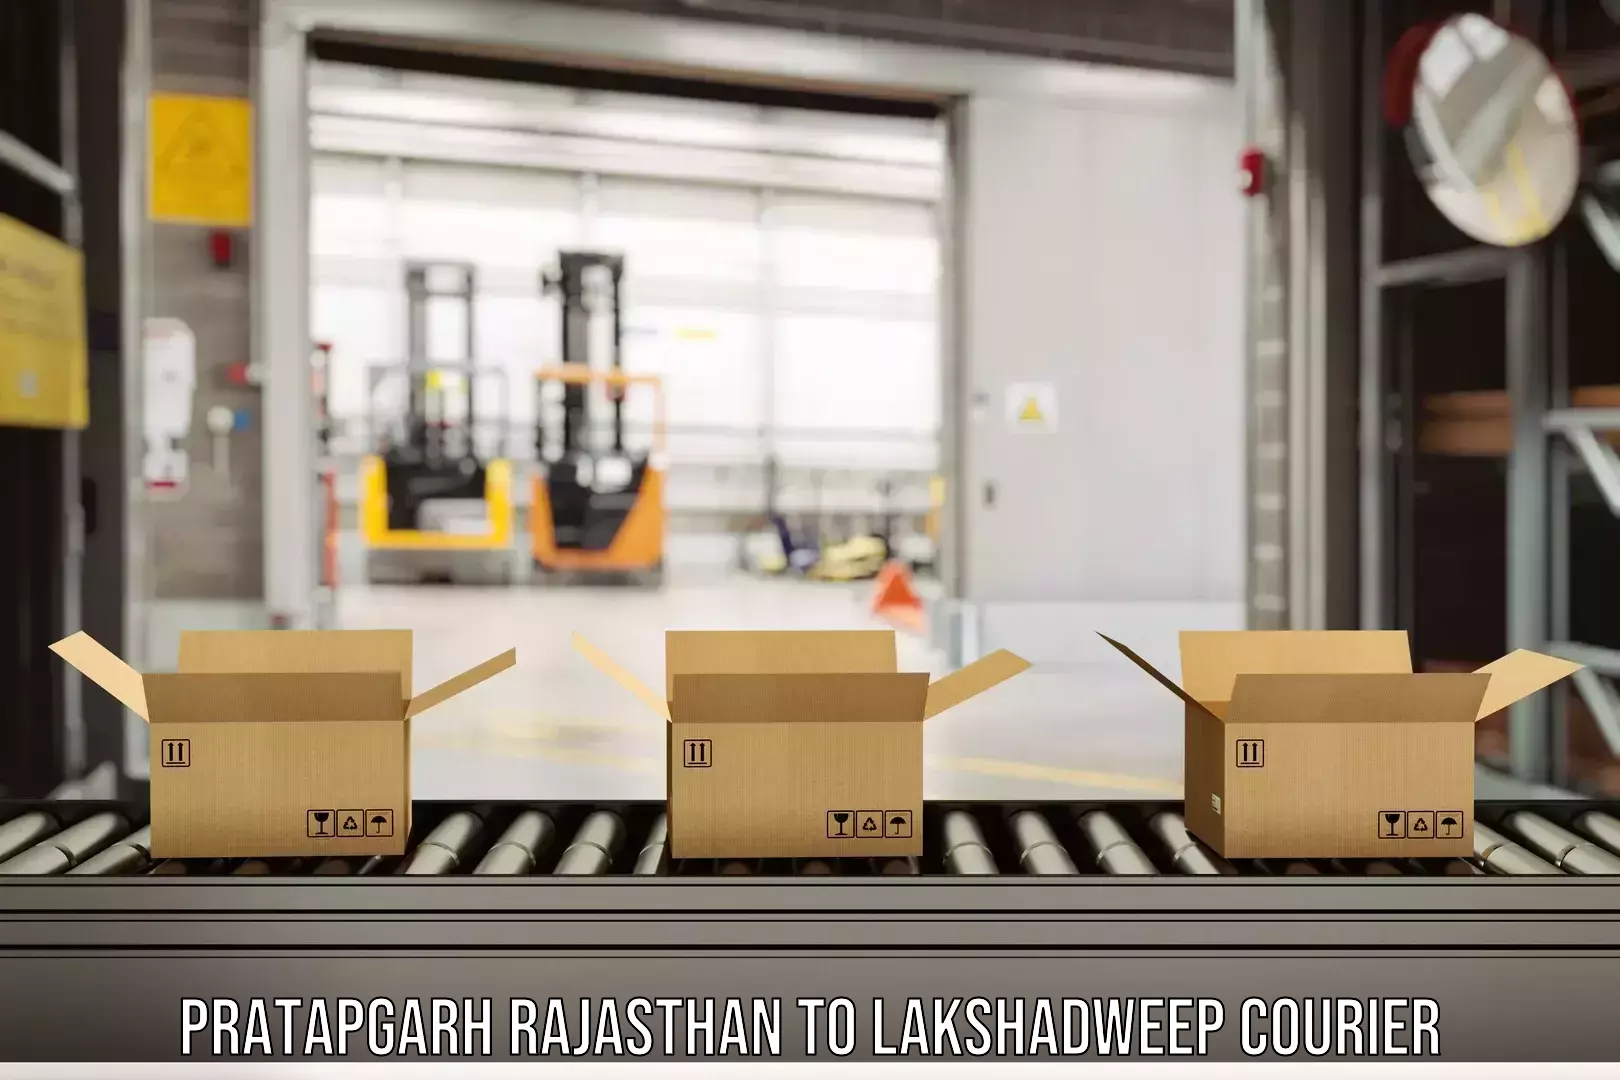 Courier service partnerships Pratapgarh Rajasthan to Lakshadweep